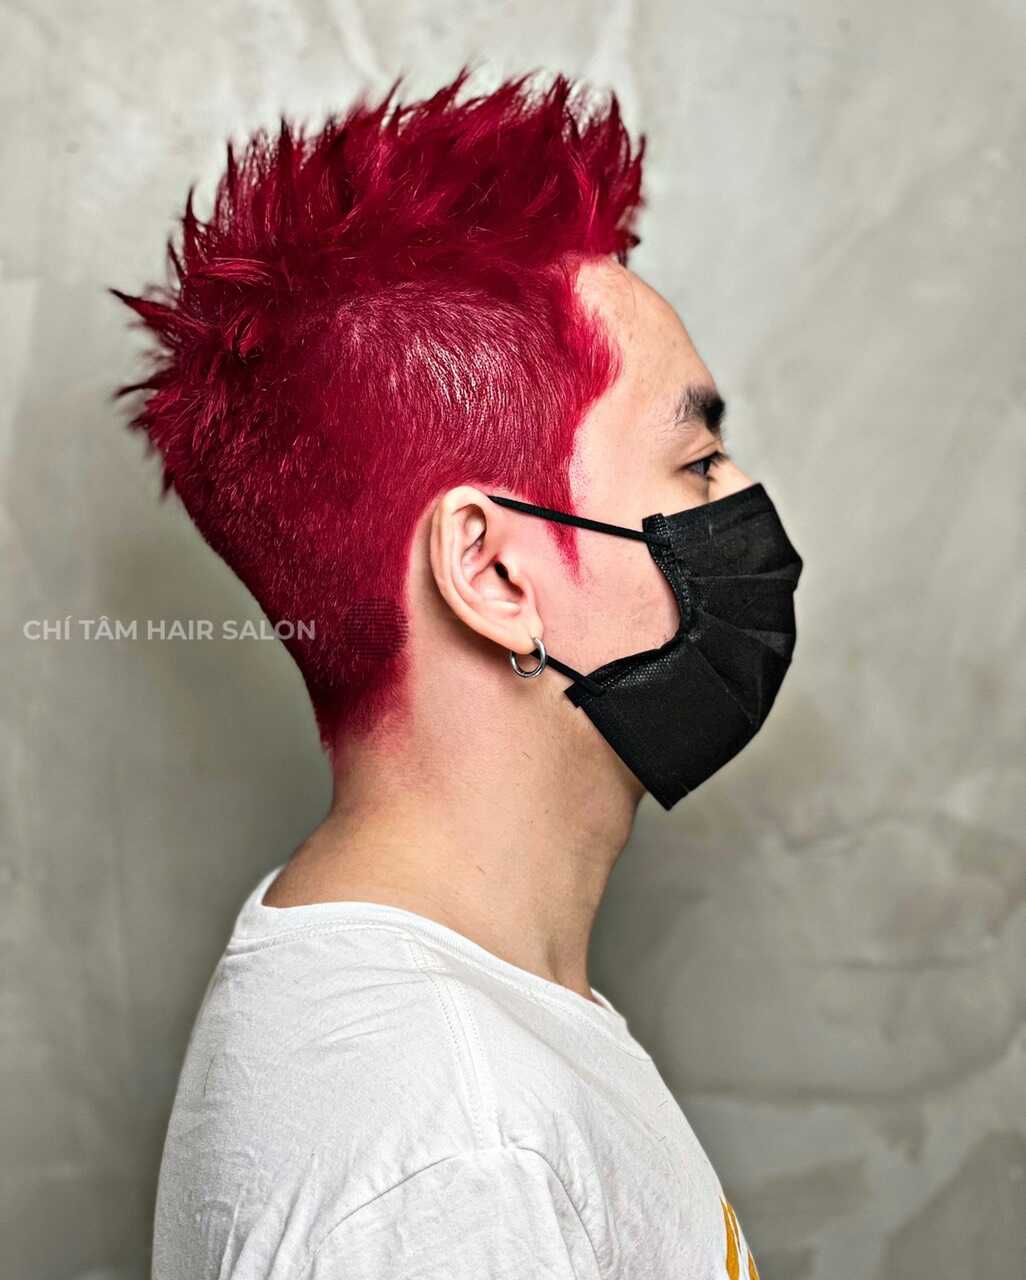 Những điểm nhấn đầy màu sắc trên tóc đỏ của chàng trai này sẽ đưa bạn đến những trải nghiệm thú vị và đầy sáng tạo. Hãy xem hình ảnh để cảm nhận được sự phóng khoáng và trẻ trung trong màu tóc này.